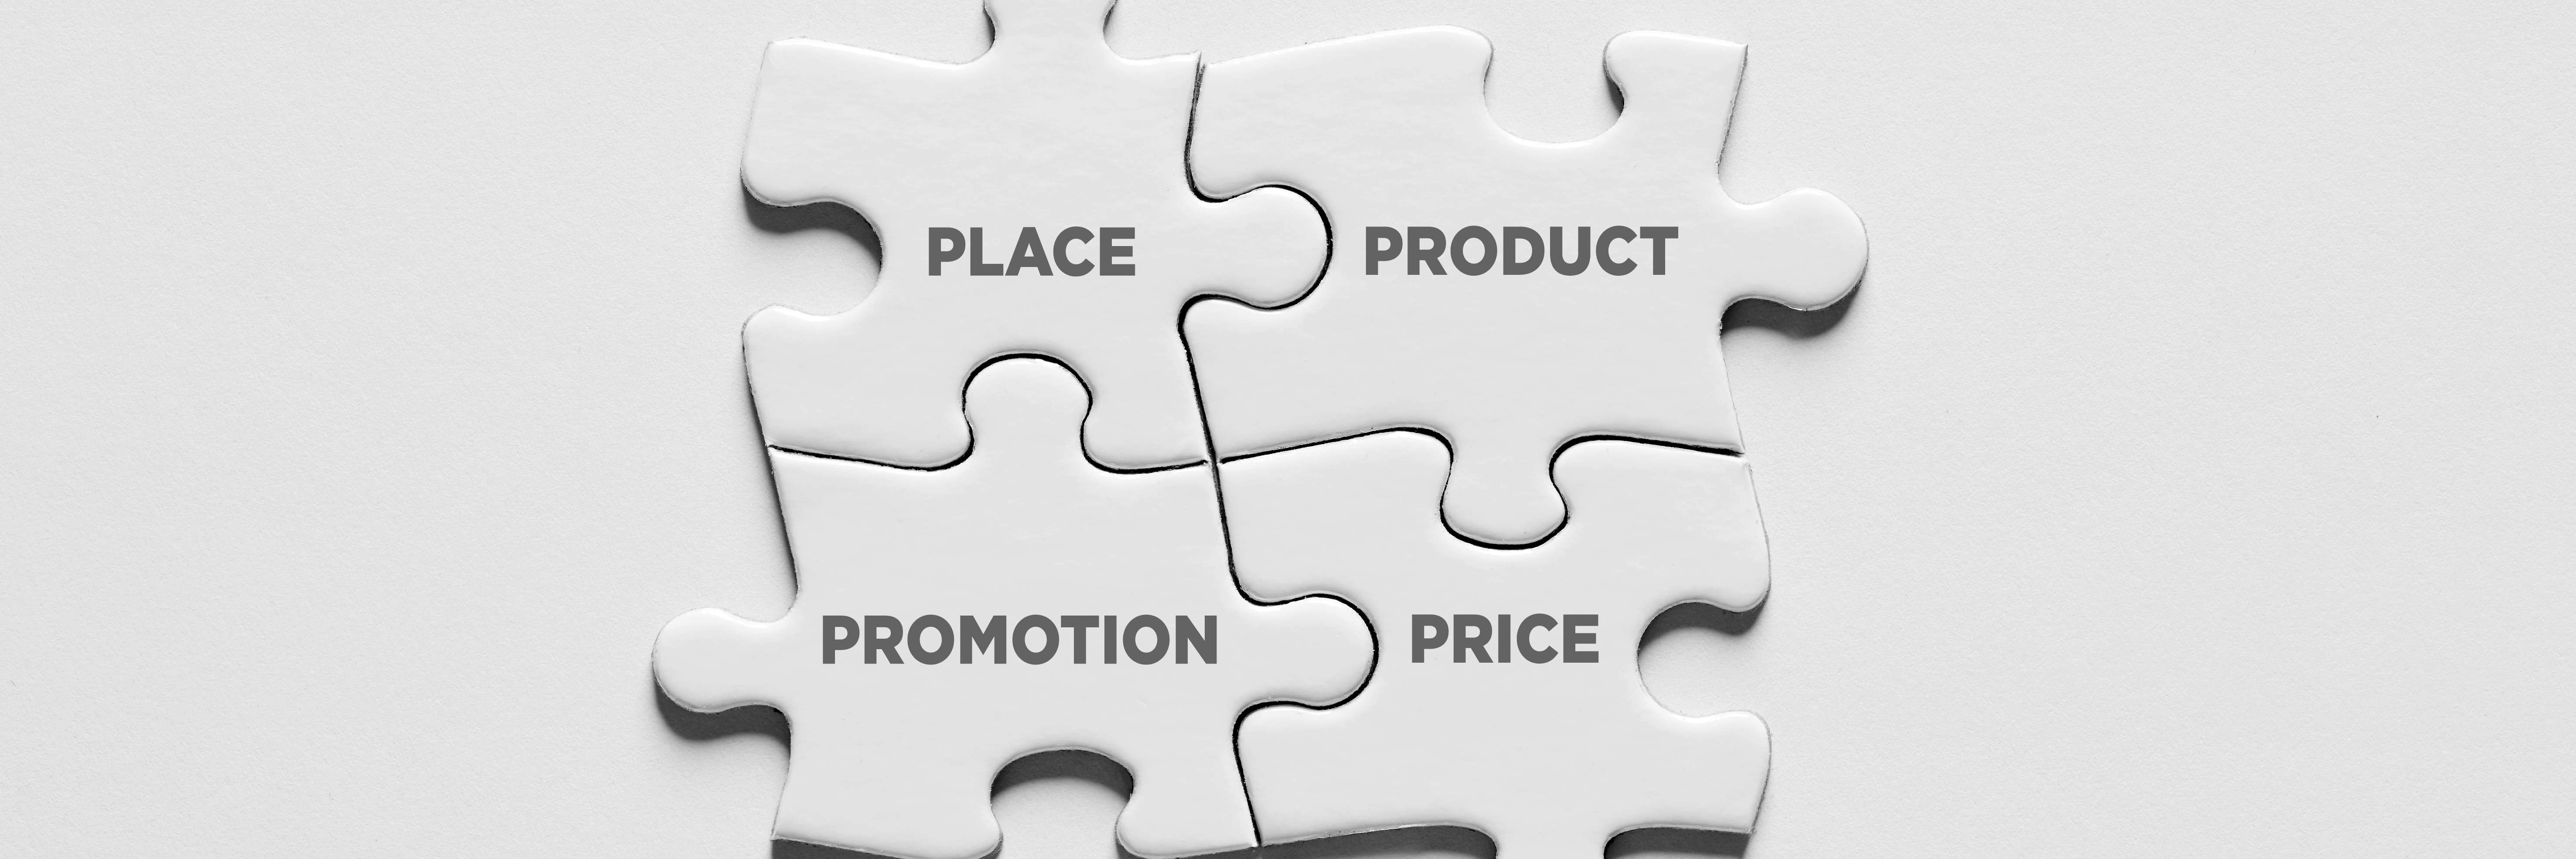 Peças de quebra-cabeça encaixadas e com os nomes: praça, produto, promoção e preço